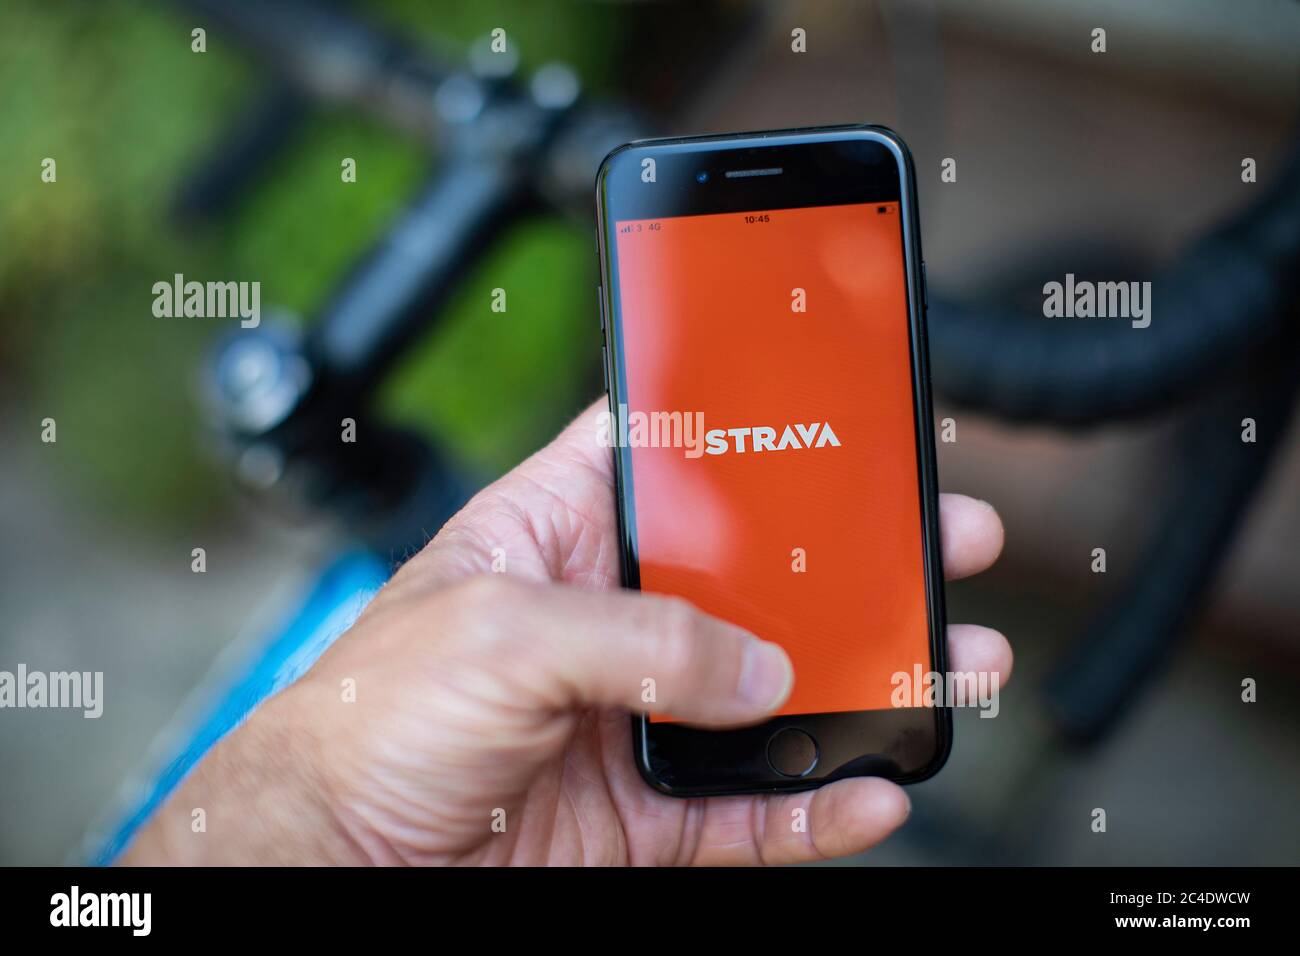 Eine Hand mit einem i-Phone zeigt Strava Fahrrad und Lauf App mit Fahrrad.  Foto von Sam Mellish Stockfotografie - Alamy